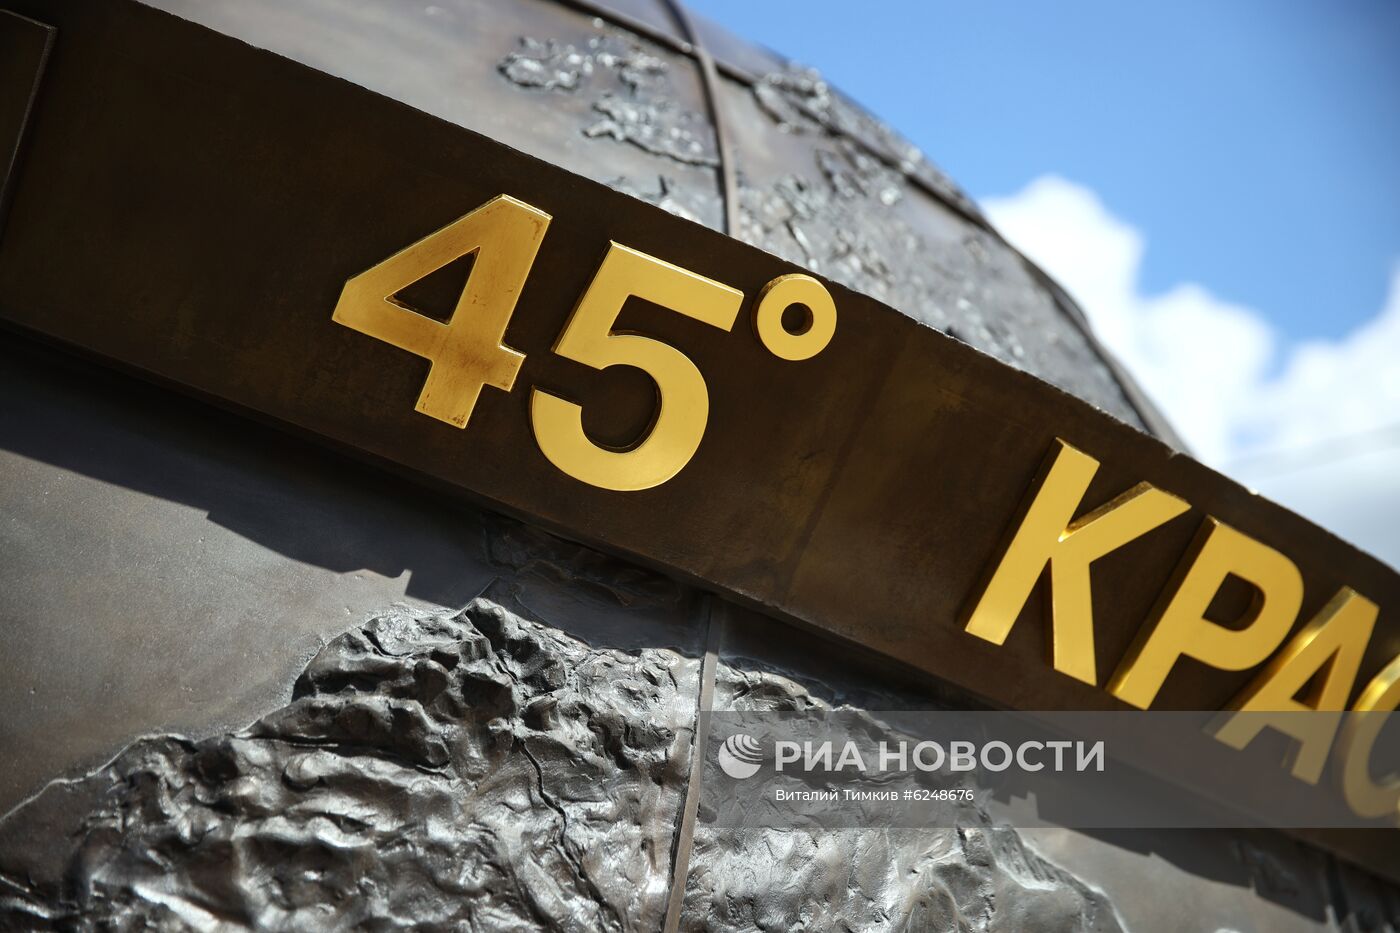 Установка скульптуры "45-я параллель" в Краснодаре